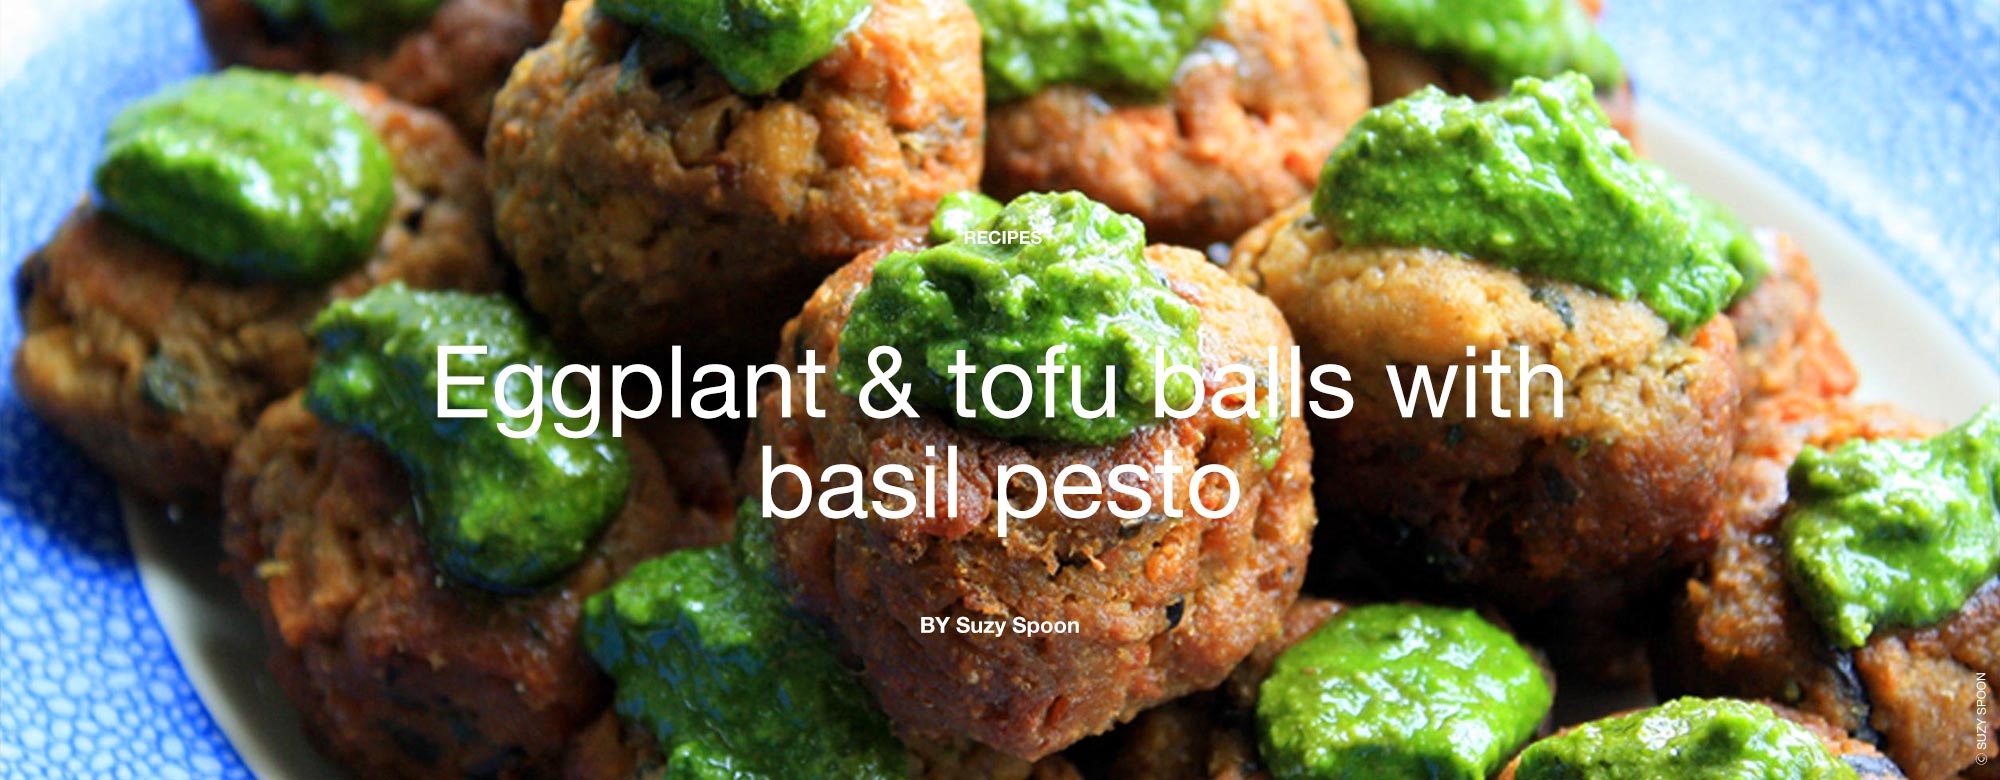 Eggplant and tofu balls with basil pesto